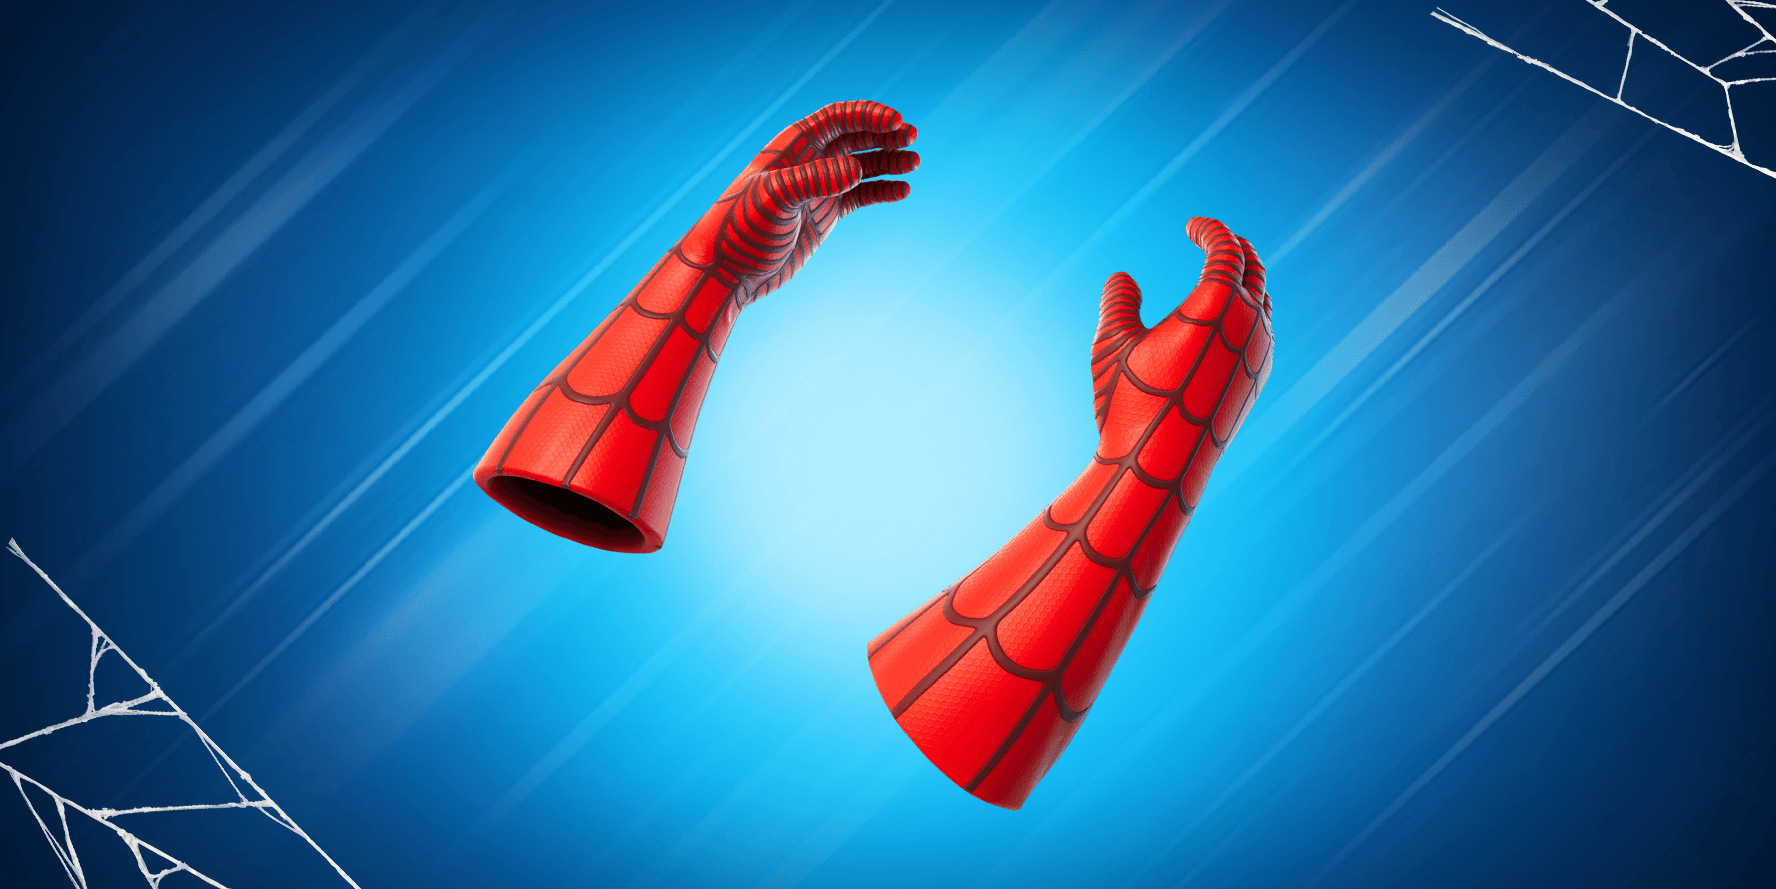 Armes Spiderman Fortnite chapitre 3, comment avoir le lance toile